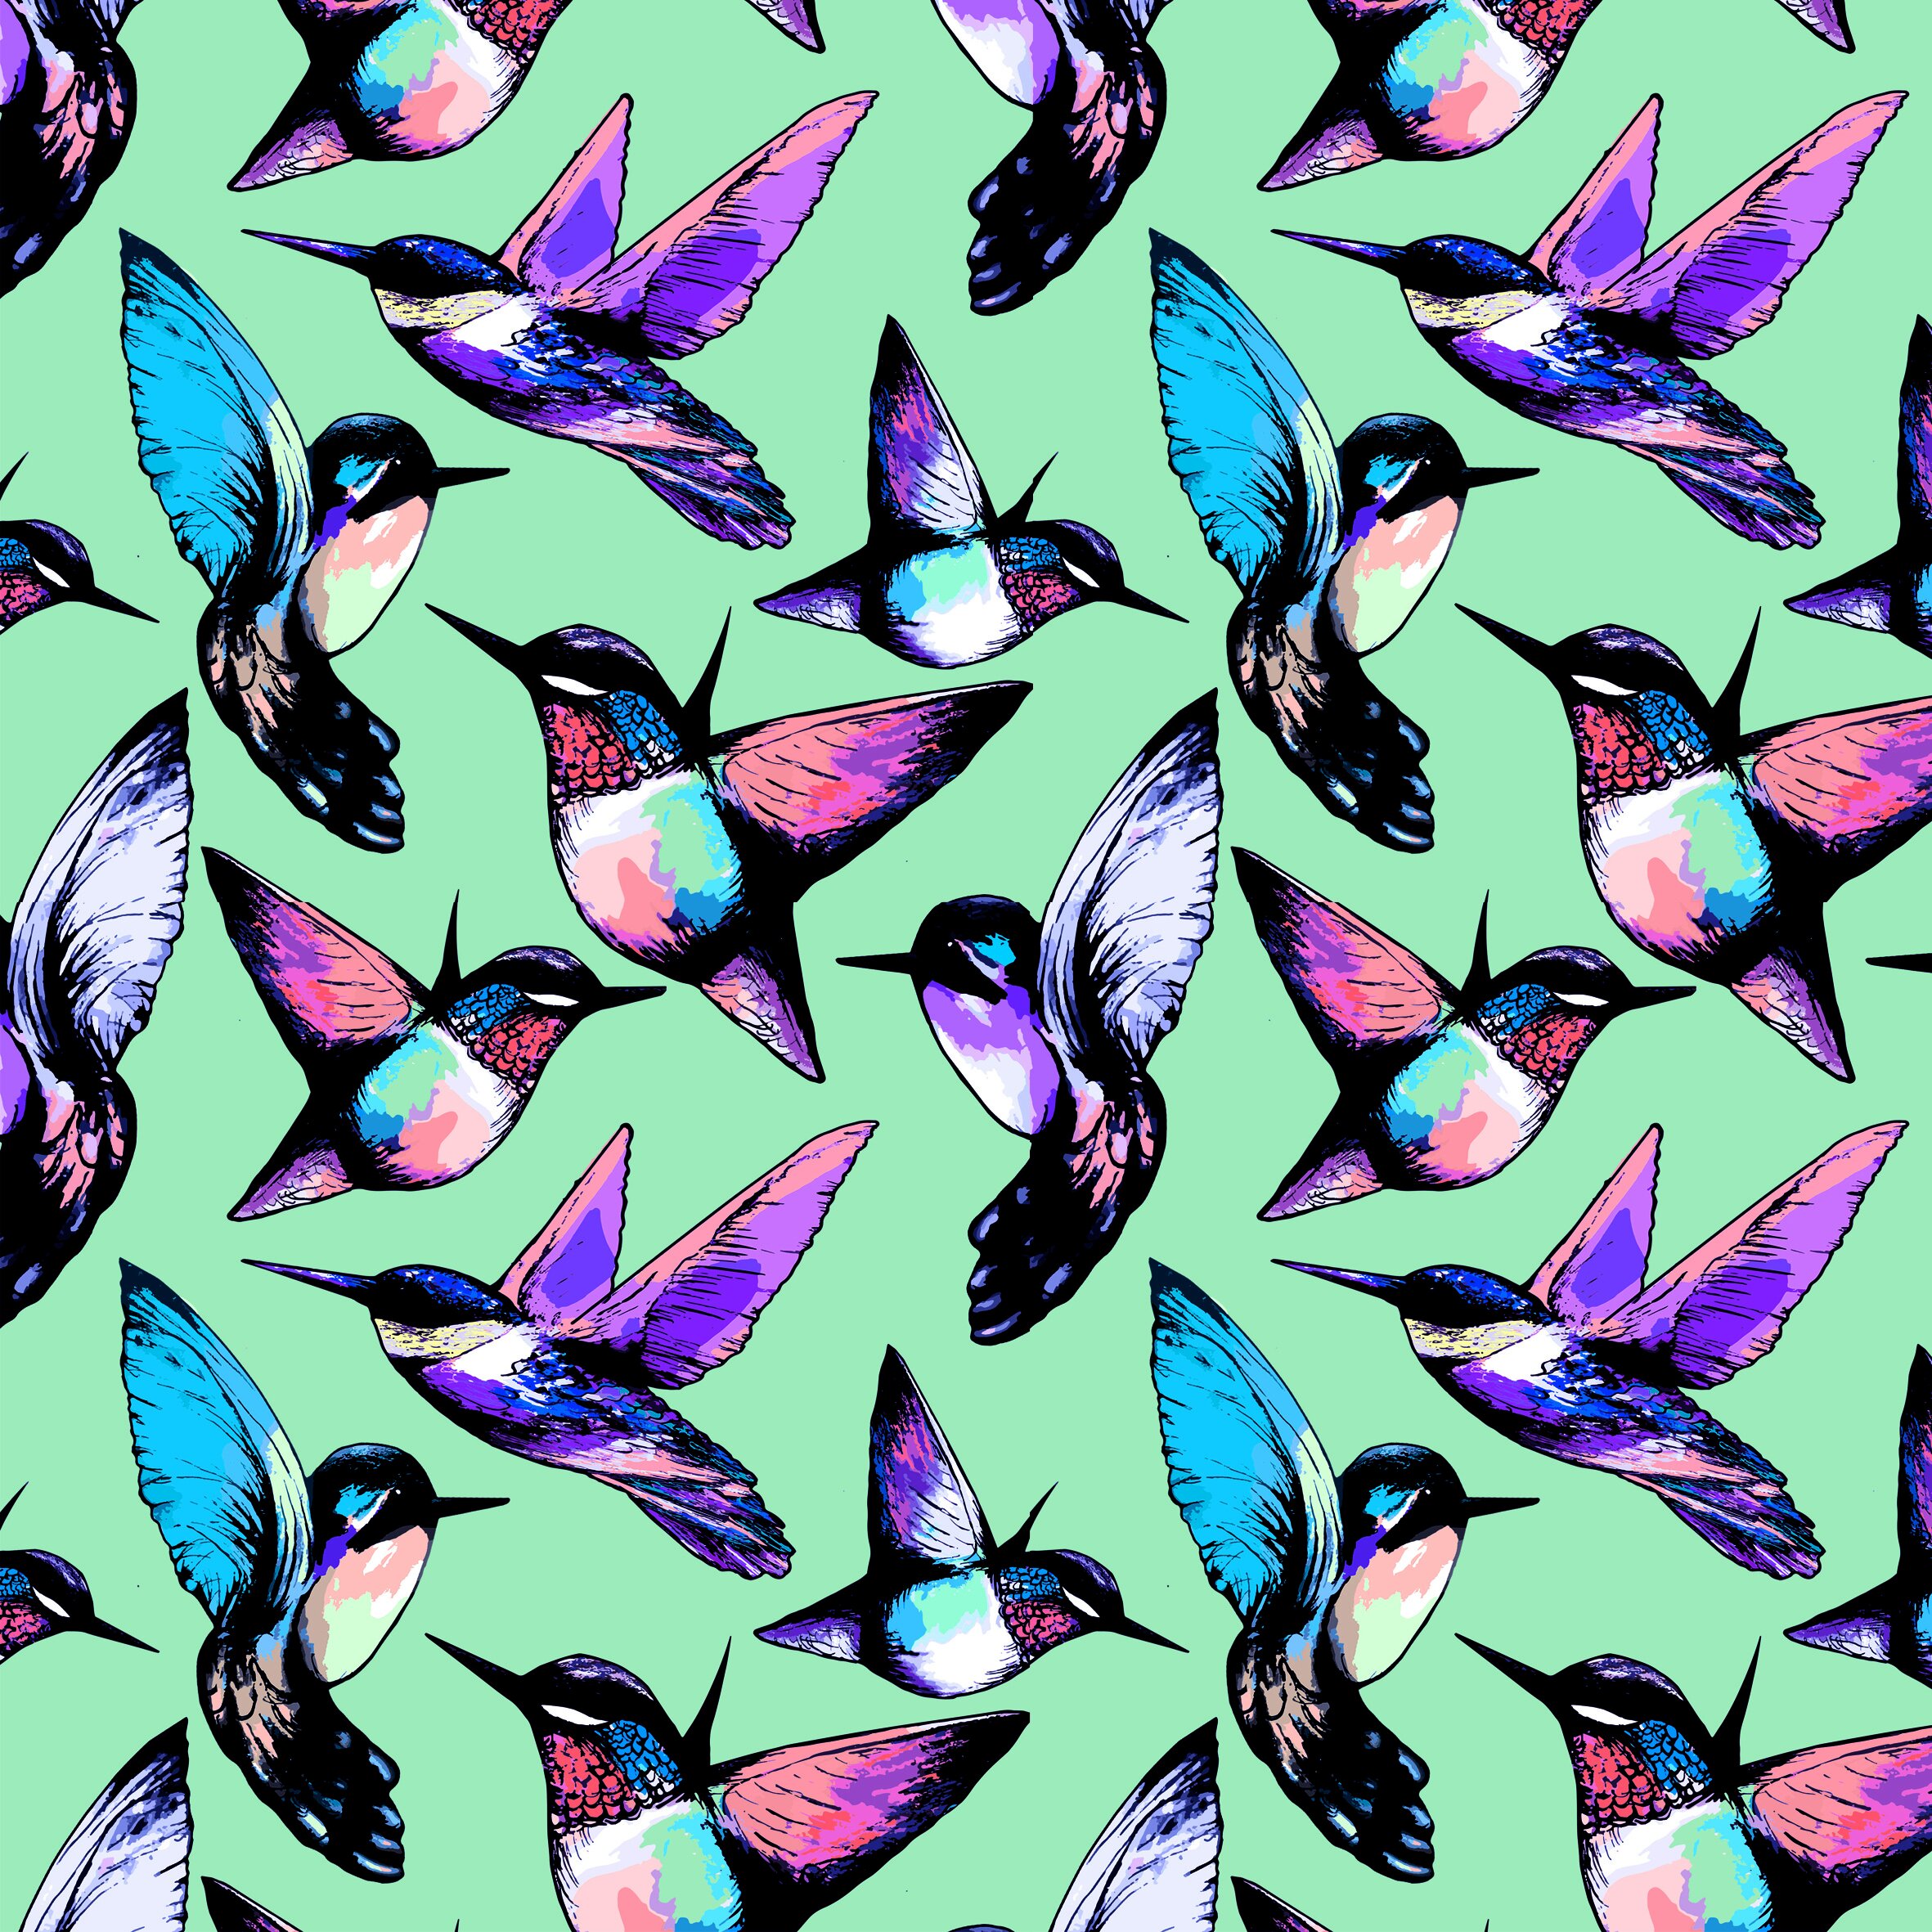 Hummingbirds 2019 (5) repeat.jpg